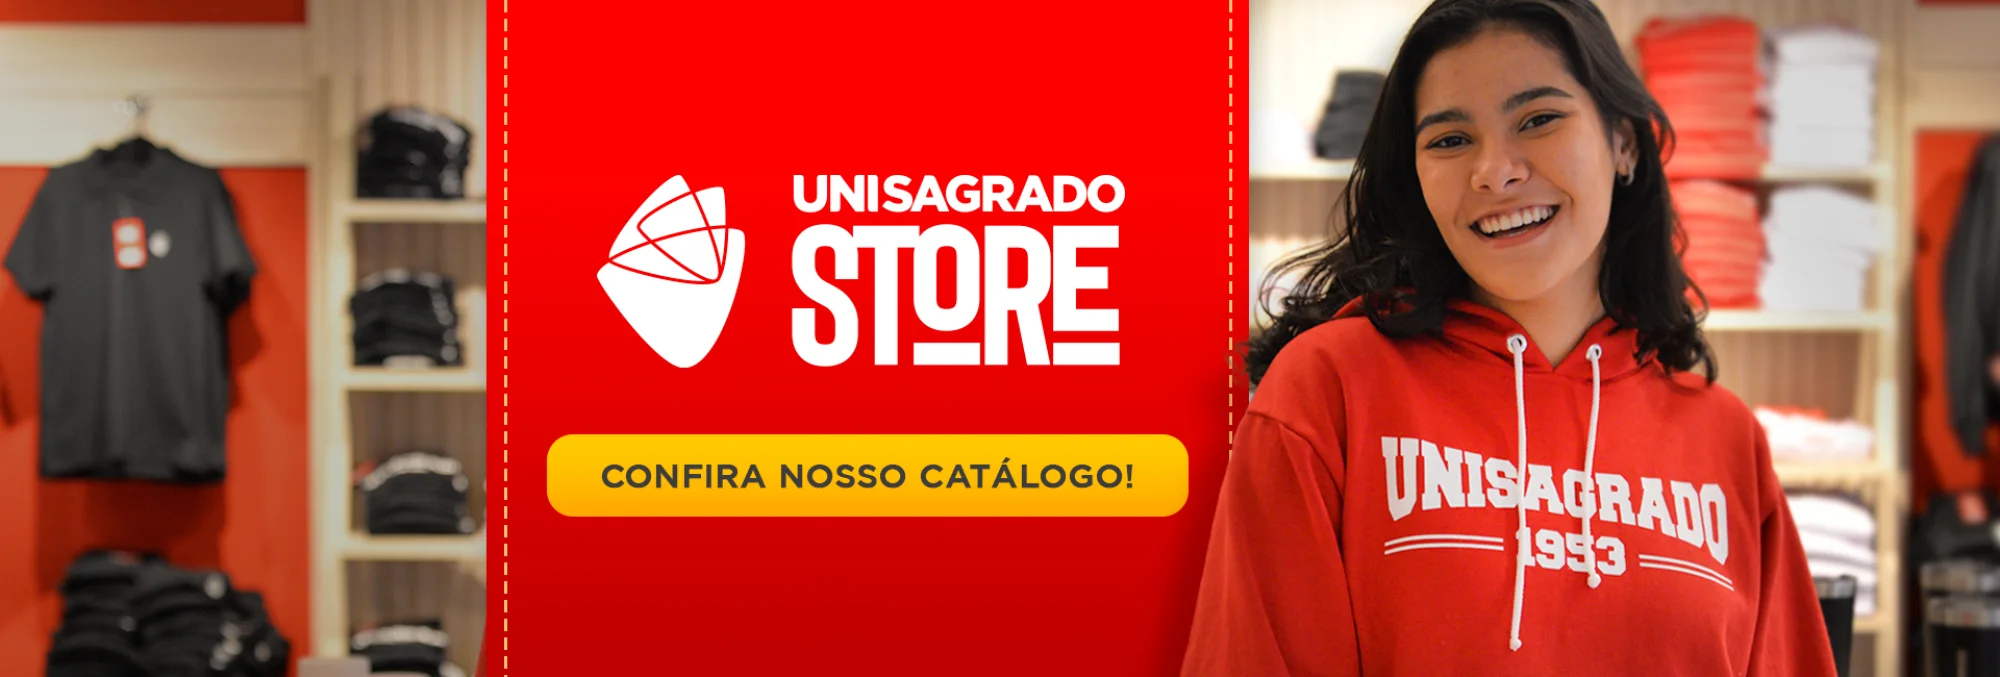 Catálogo UNISAGRADO STORE